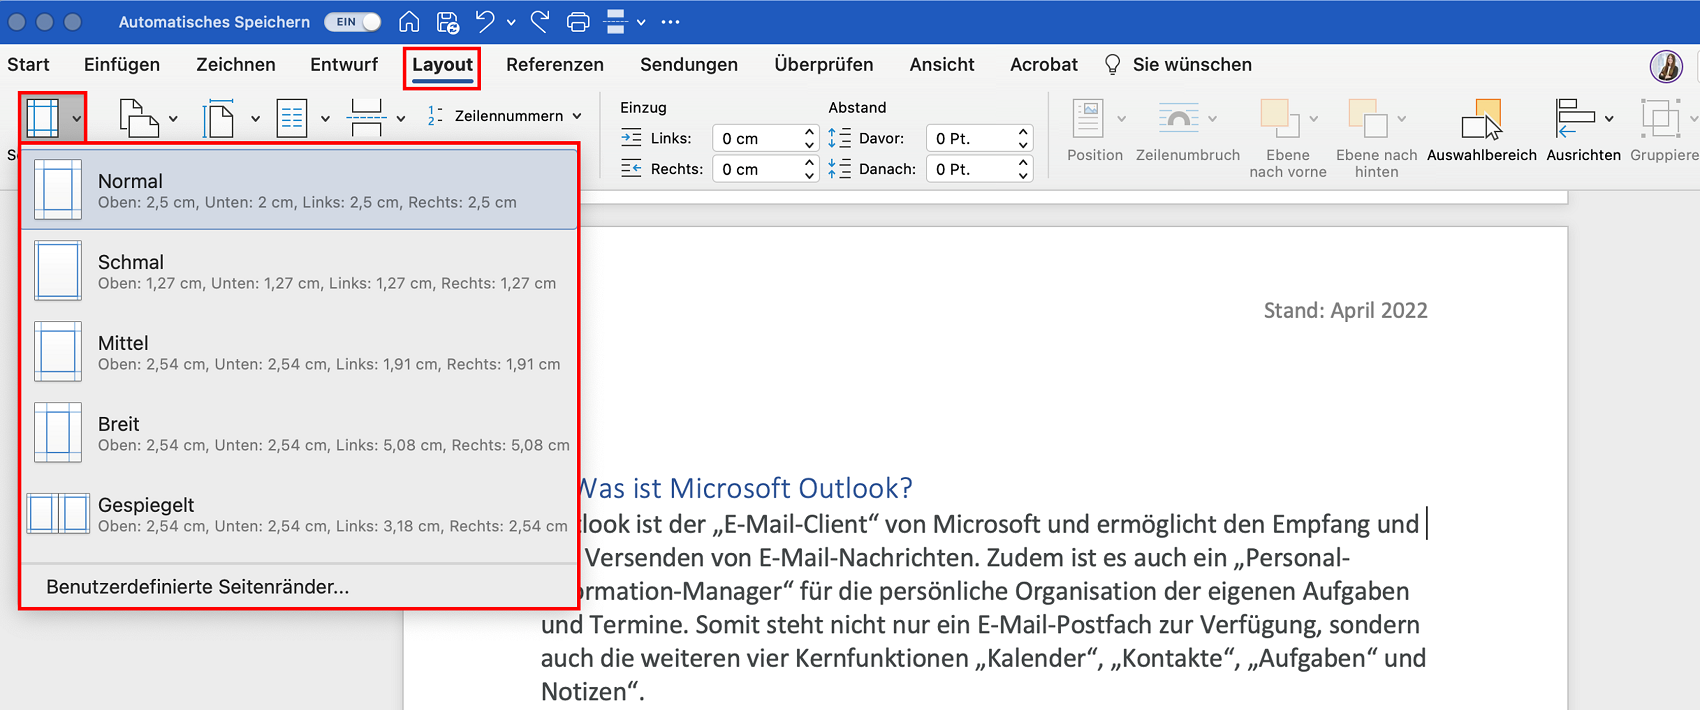 Microsoft Word bietet auch für Mac-Nutzer die Option, Seitenränder benutzerdefiniert anzupassen.